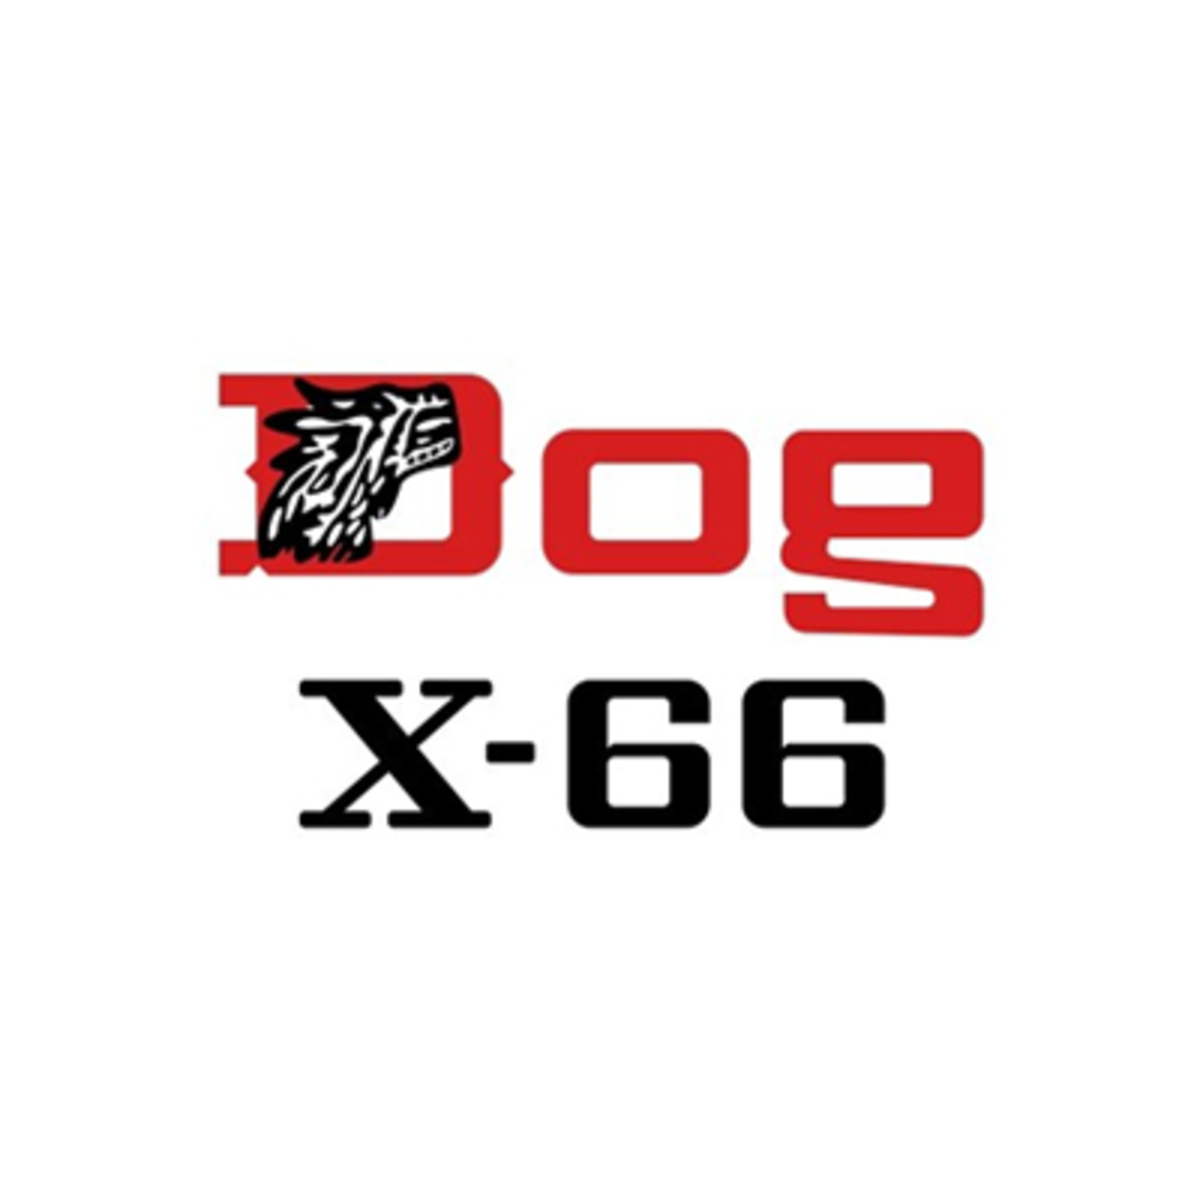 DOG X-66